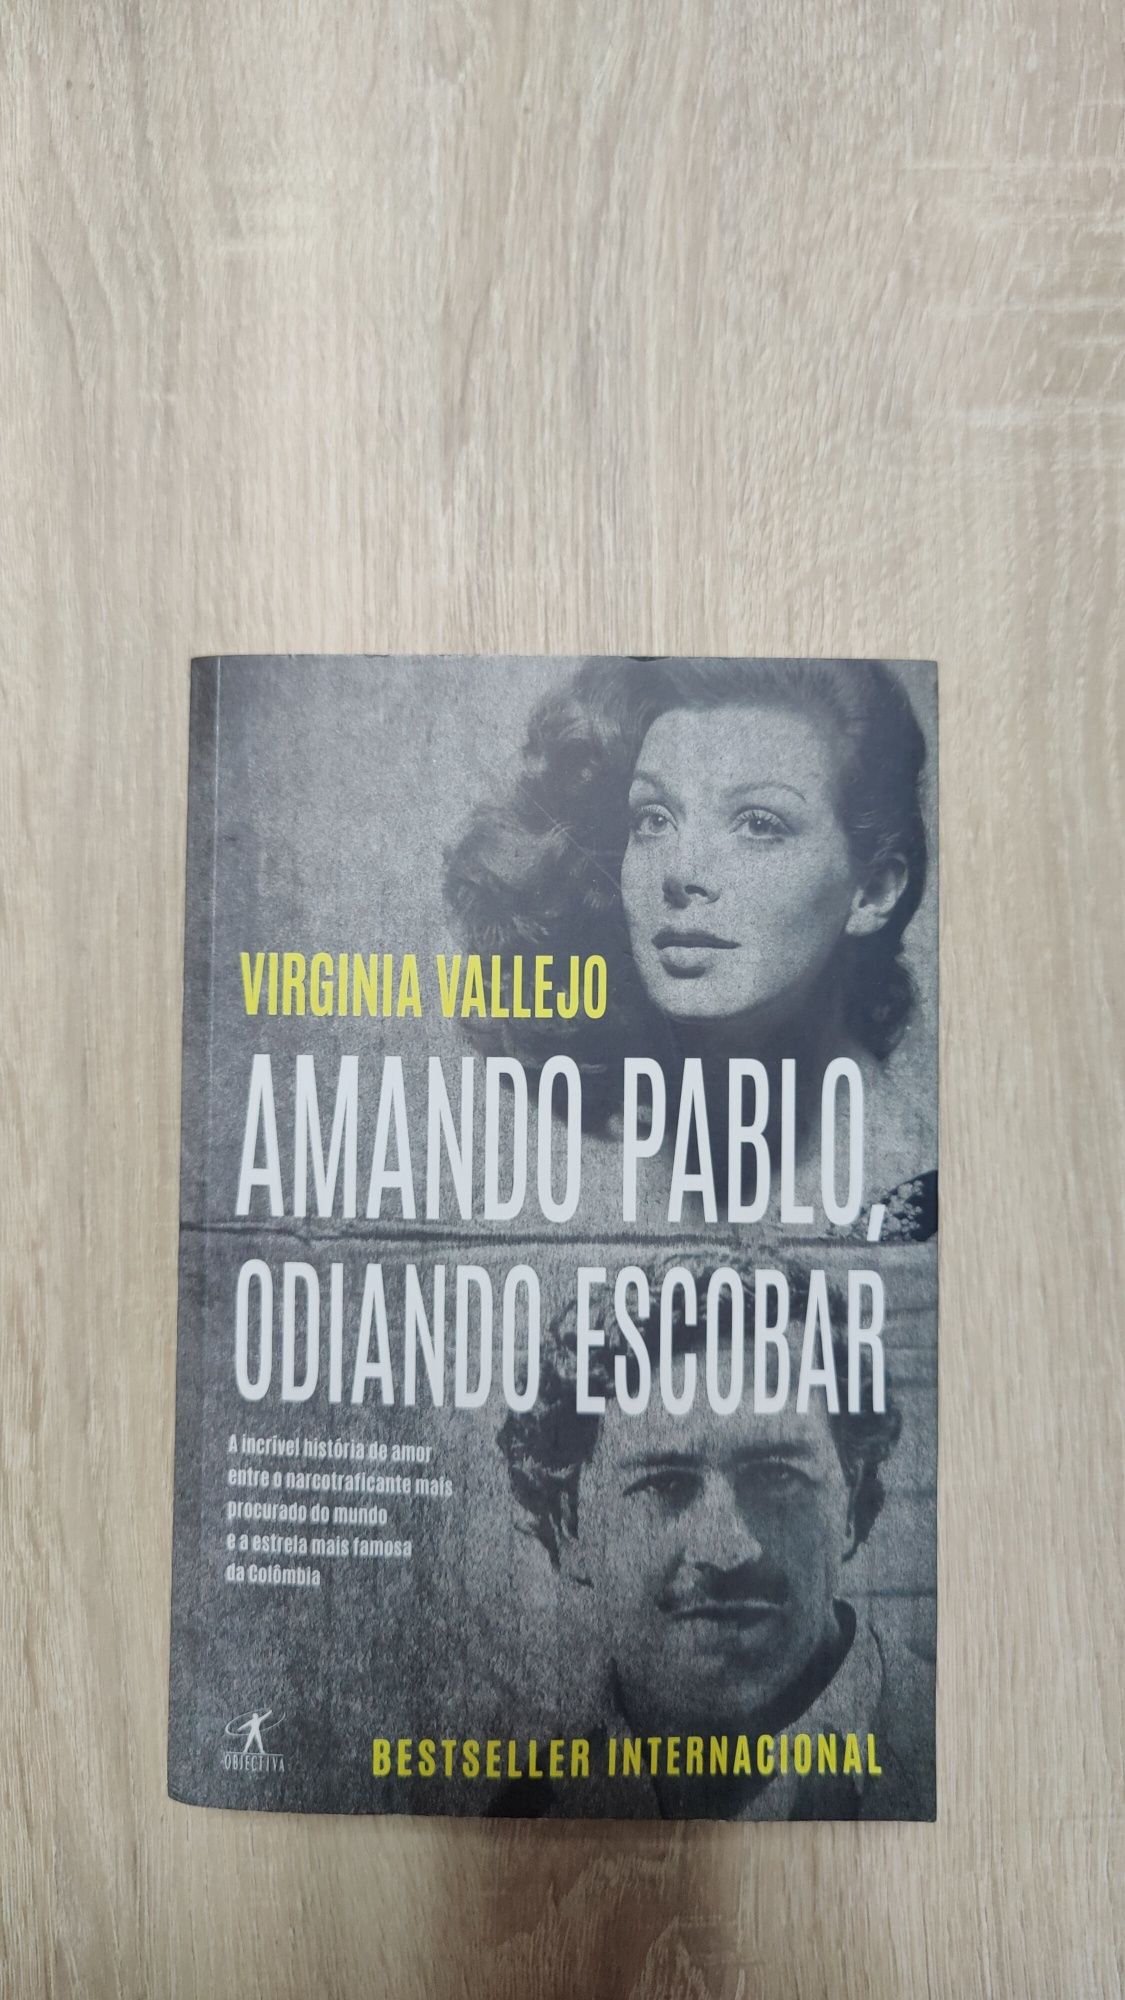 Livro sobre Pablo Escobar